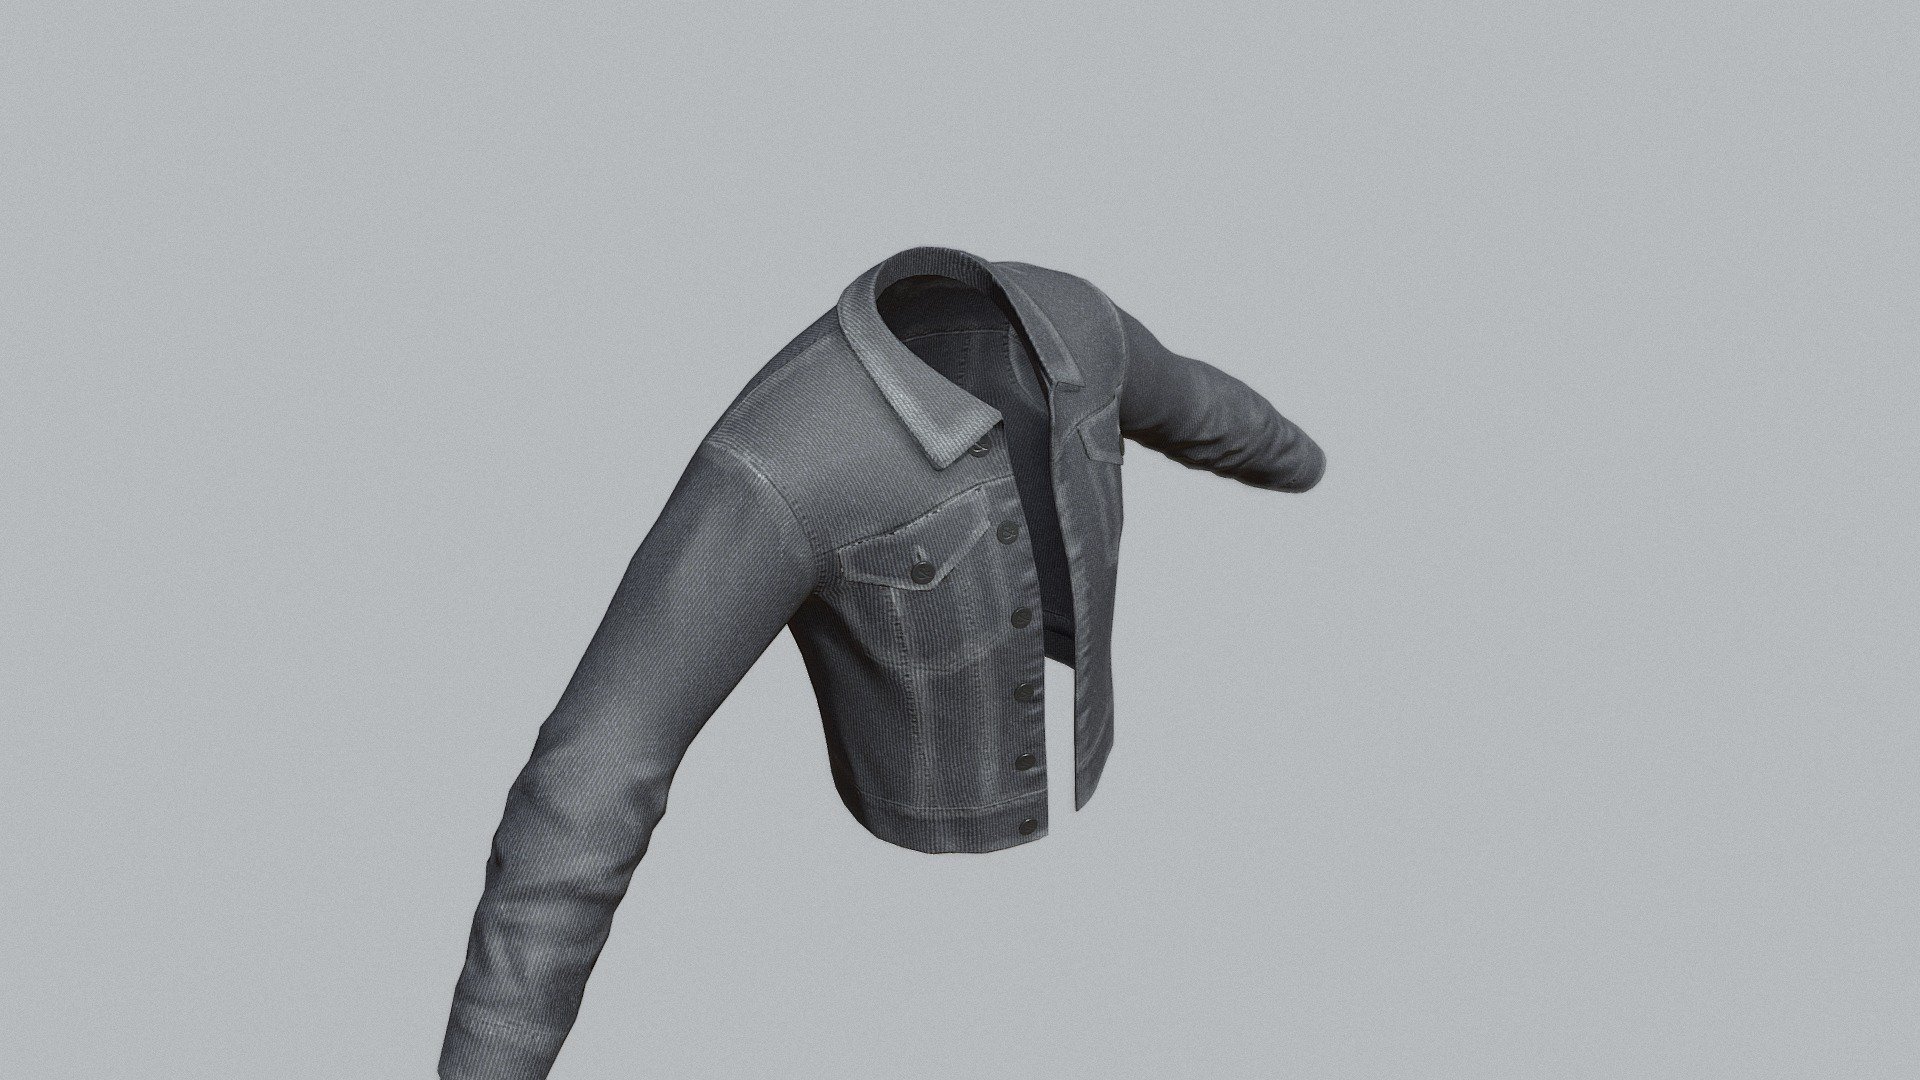 Black Button Jean Jacket WIP - Black Jean Jacket WIP - 3D model by Nicole Gueli (@sirenorseraph) 3d model